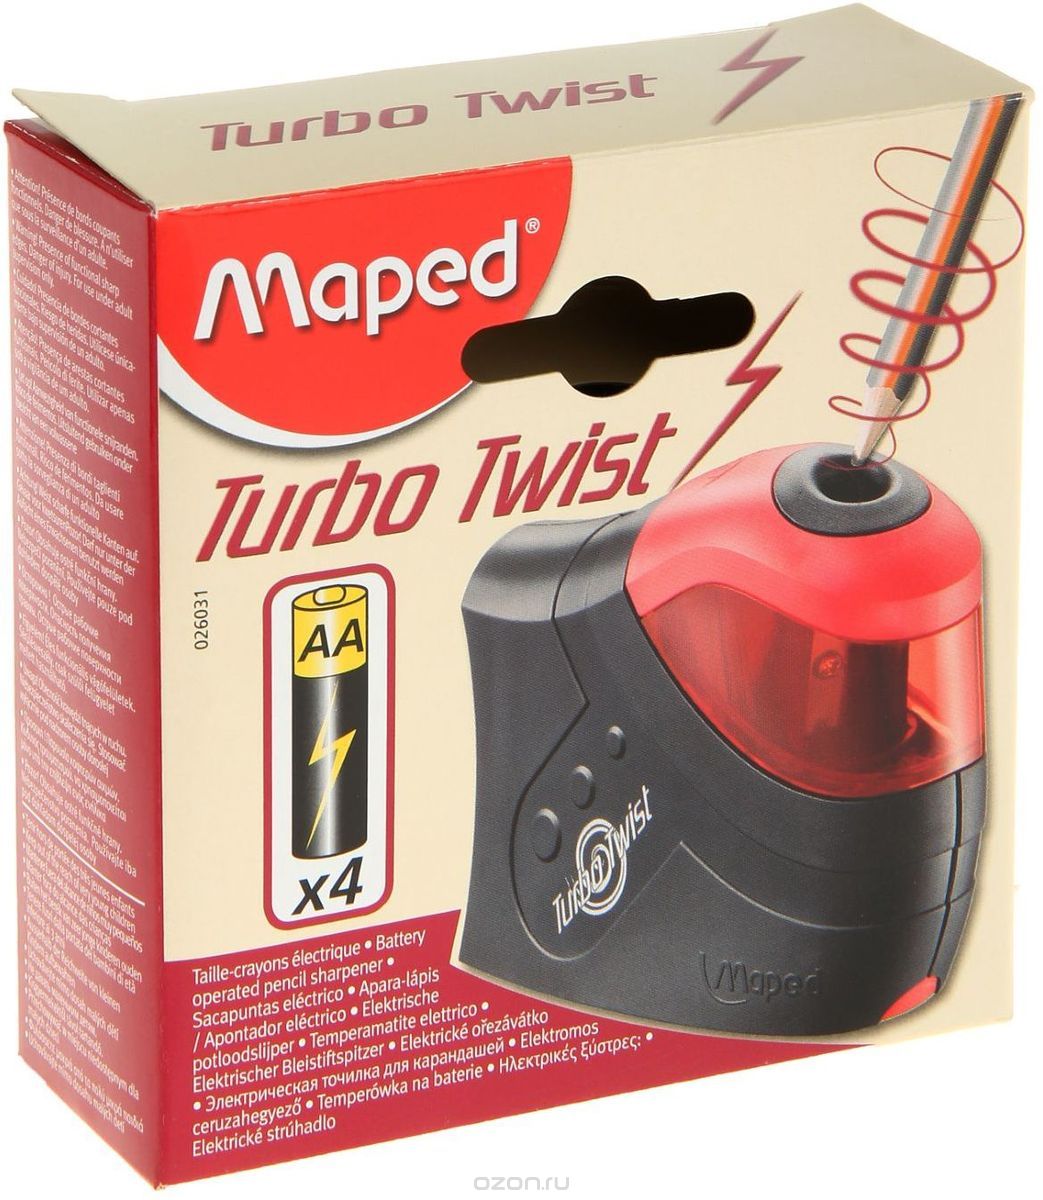 Maped   Turbo Twist   